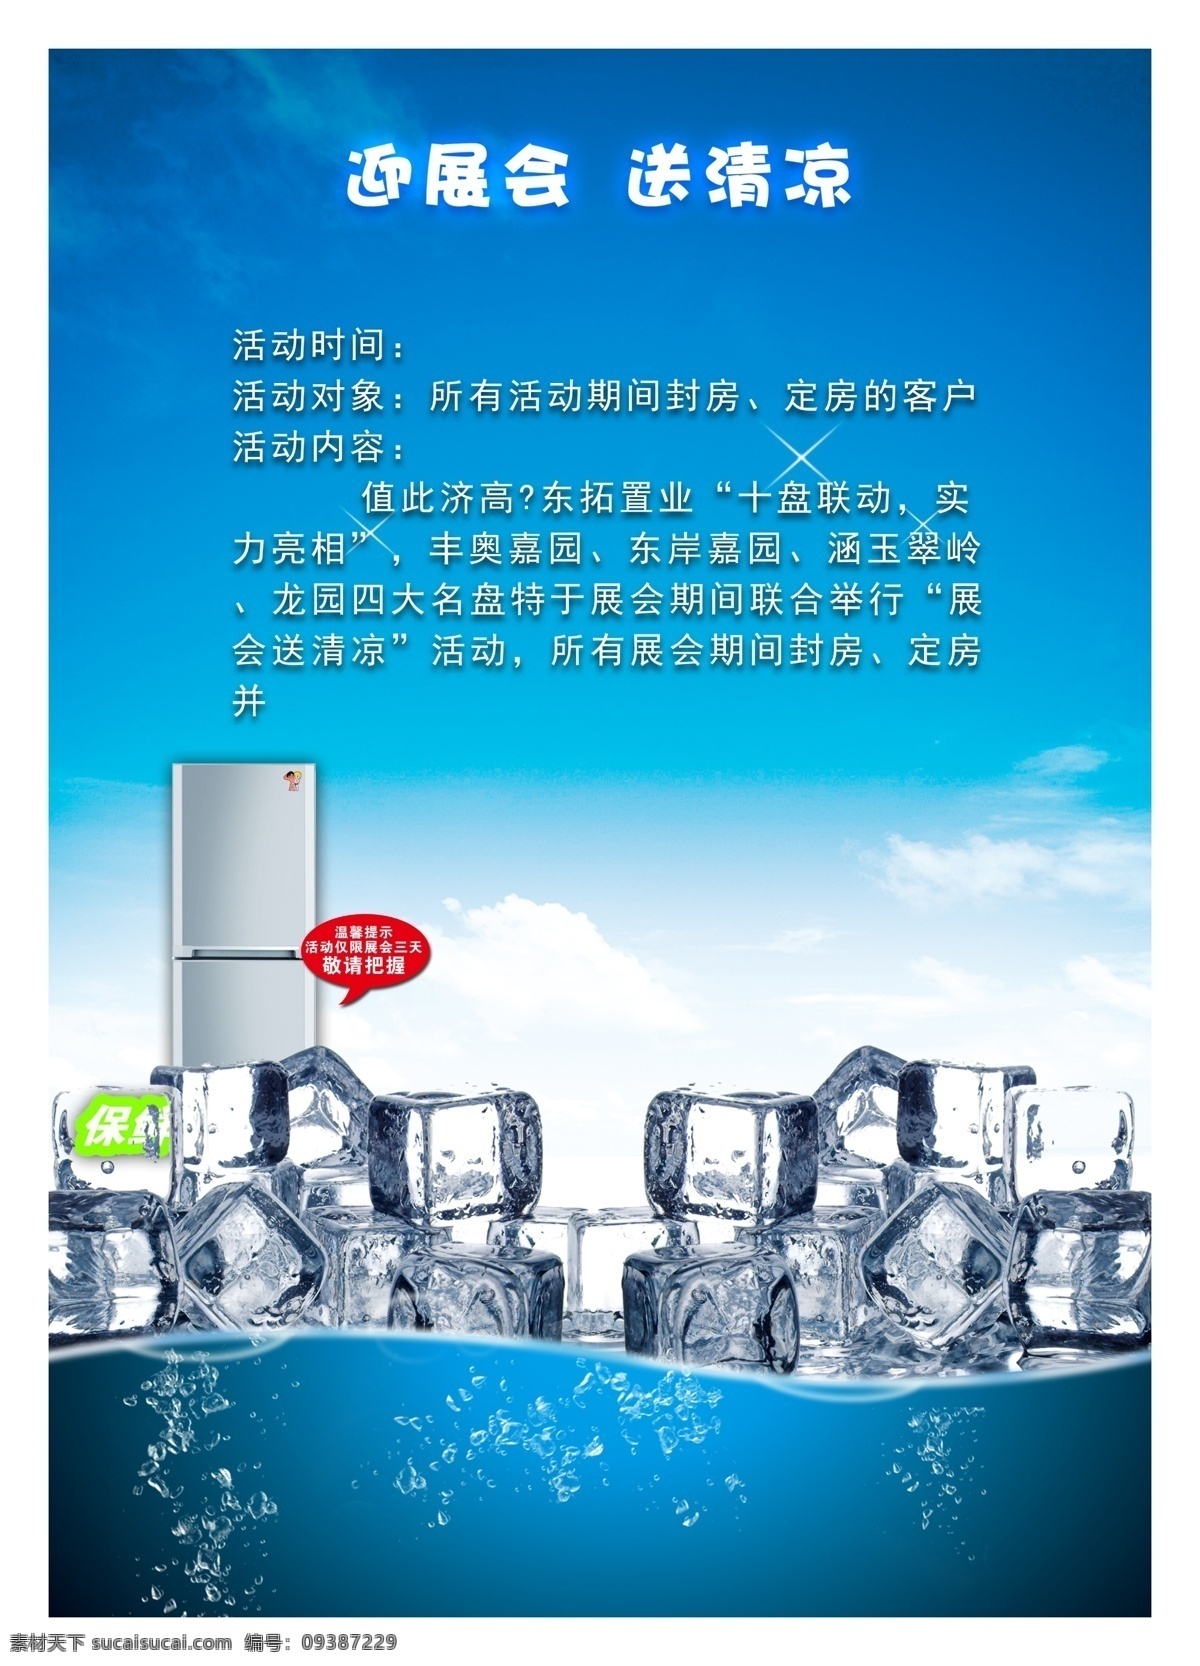 冰箱 优惠 活动 宣传 中文字 星光效果 冰块 水珠效果 蓝天 白云 白色